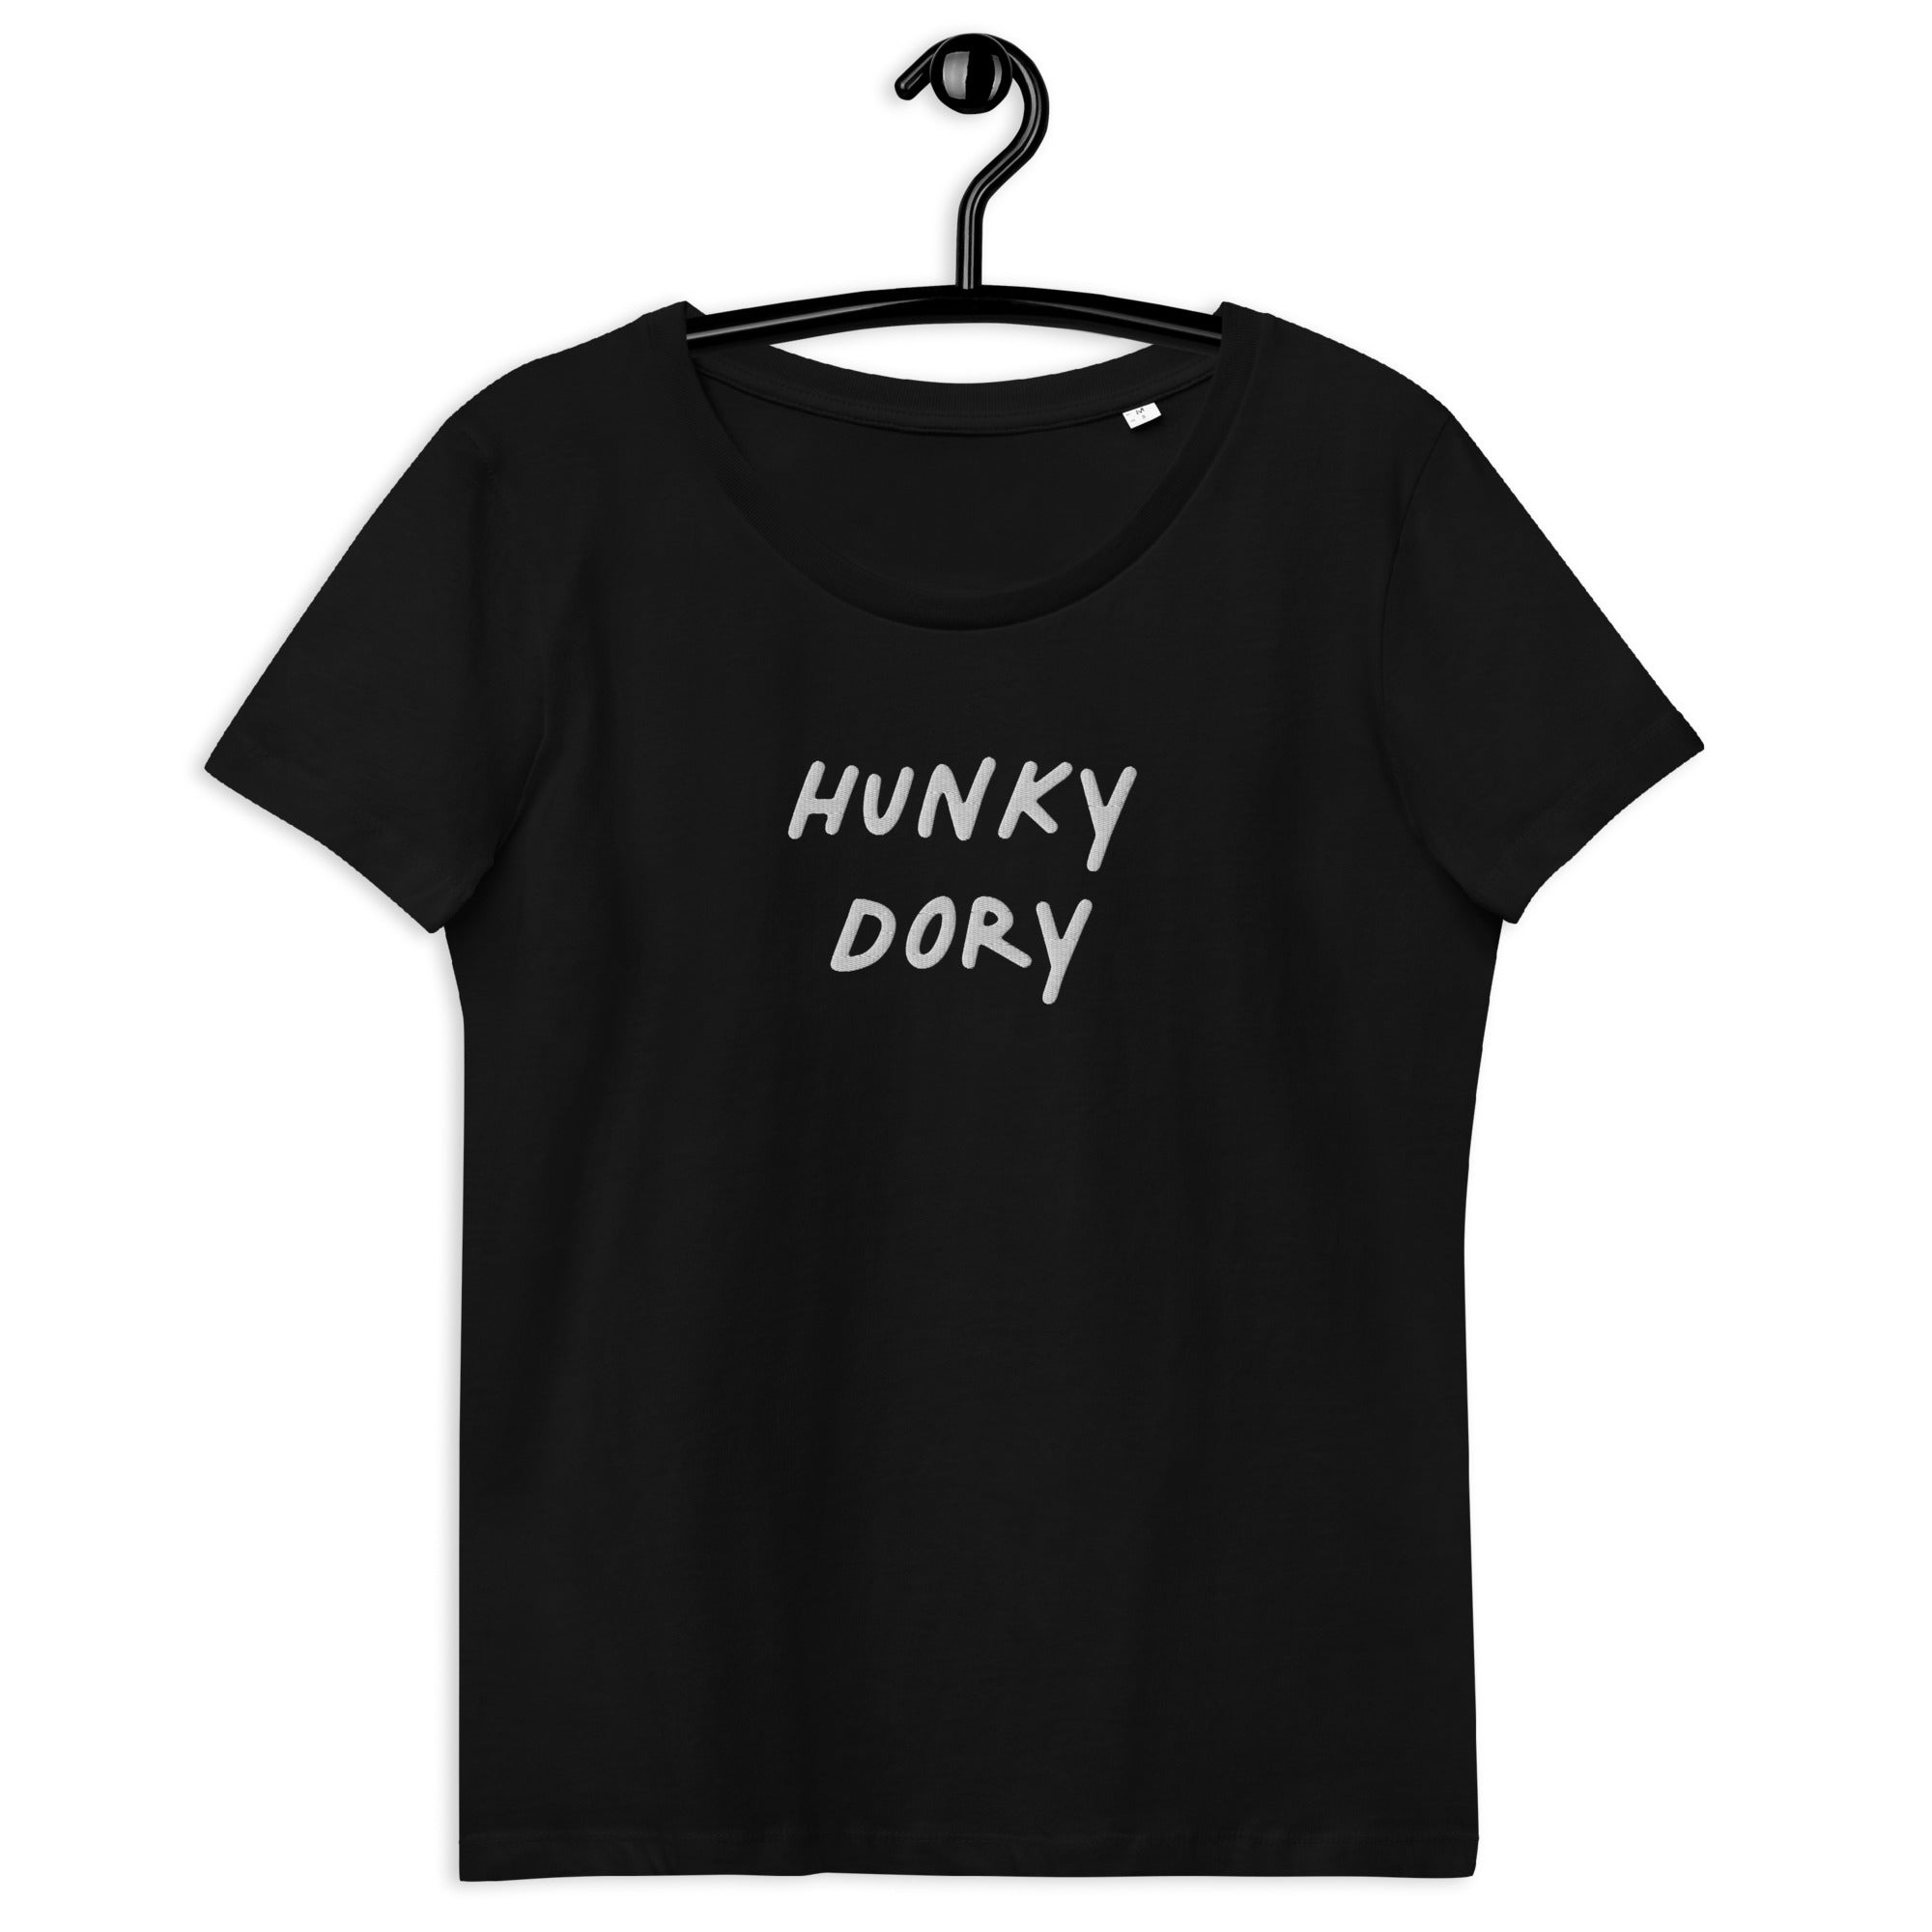 Camiseta orgánica ajustada para mujer bordada HUNKY DORY (texto blanco)